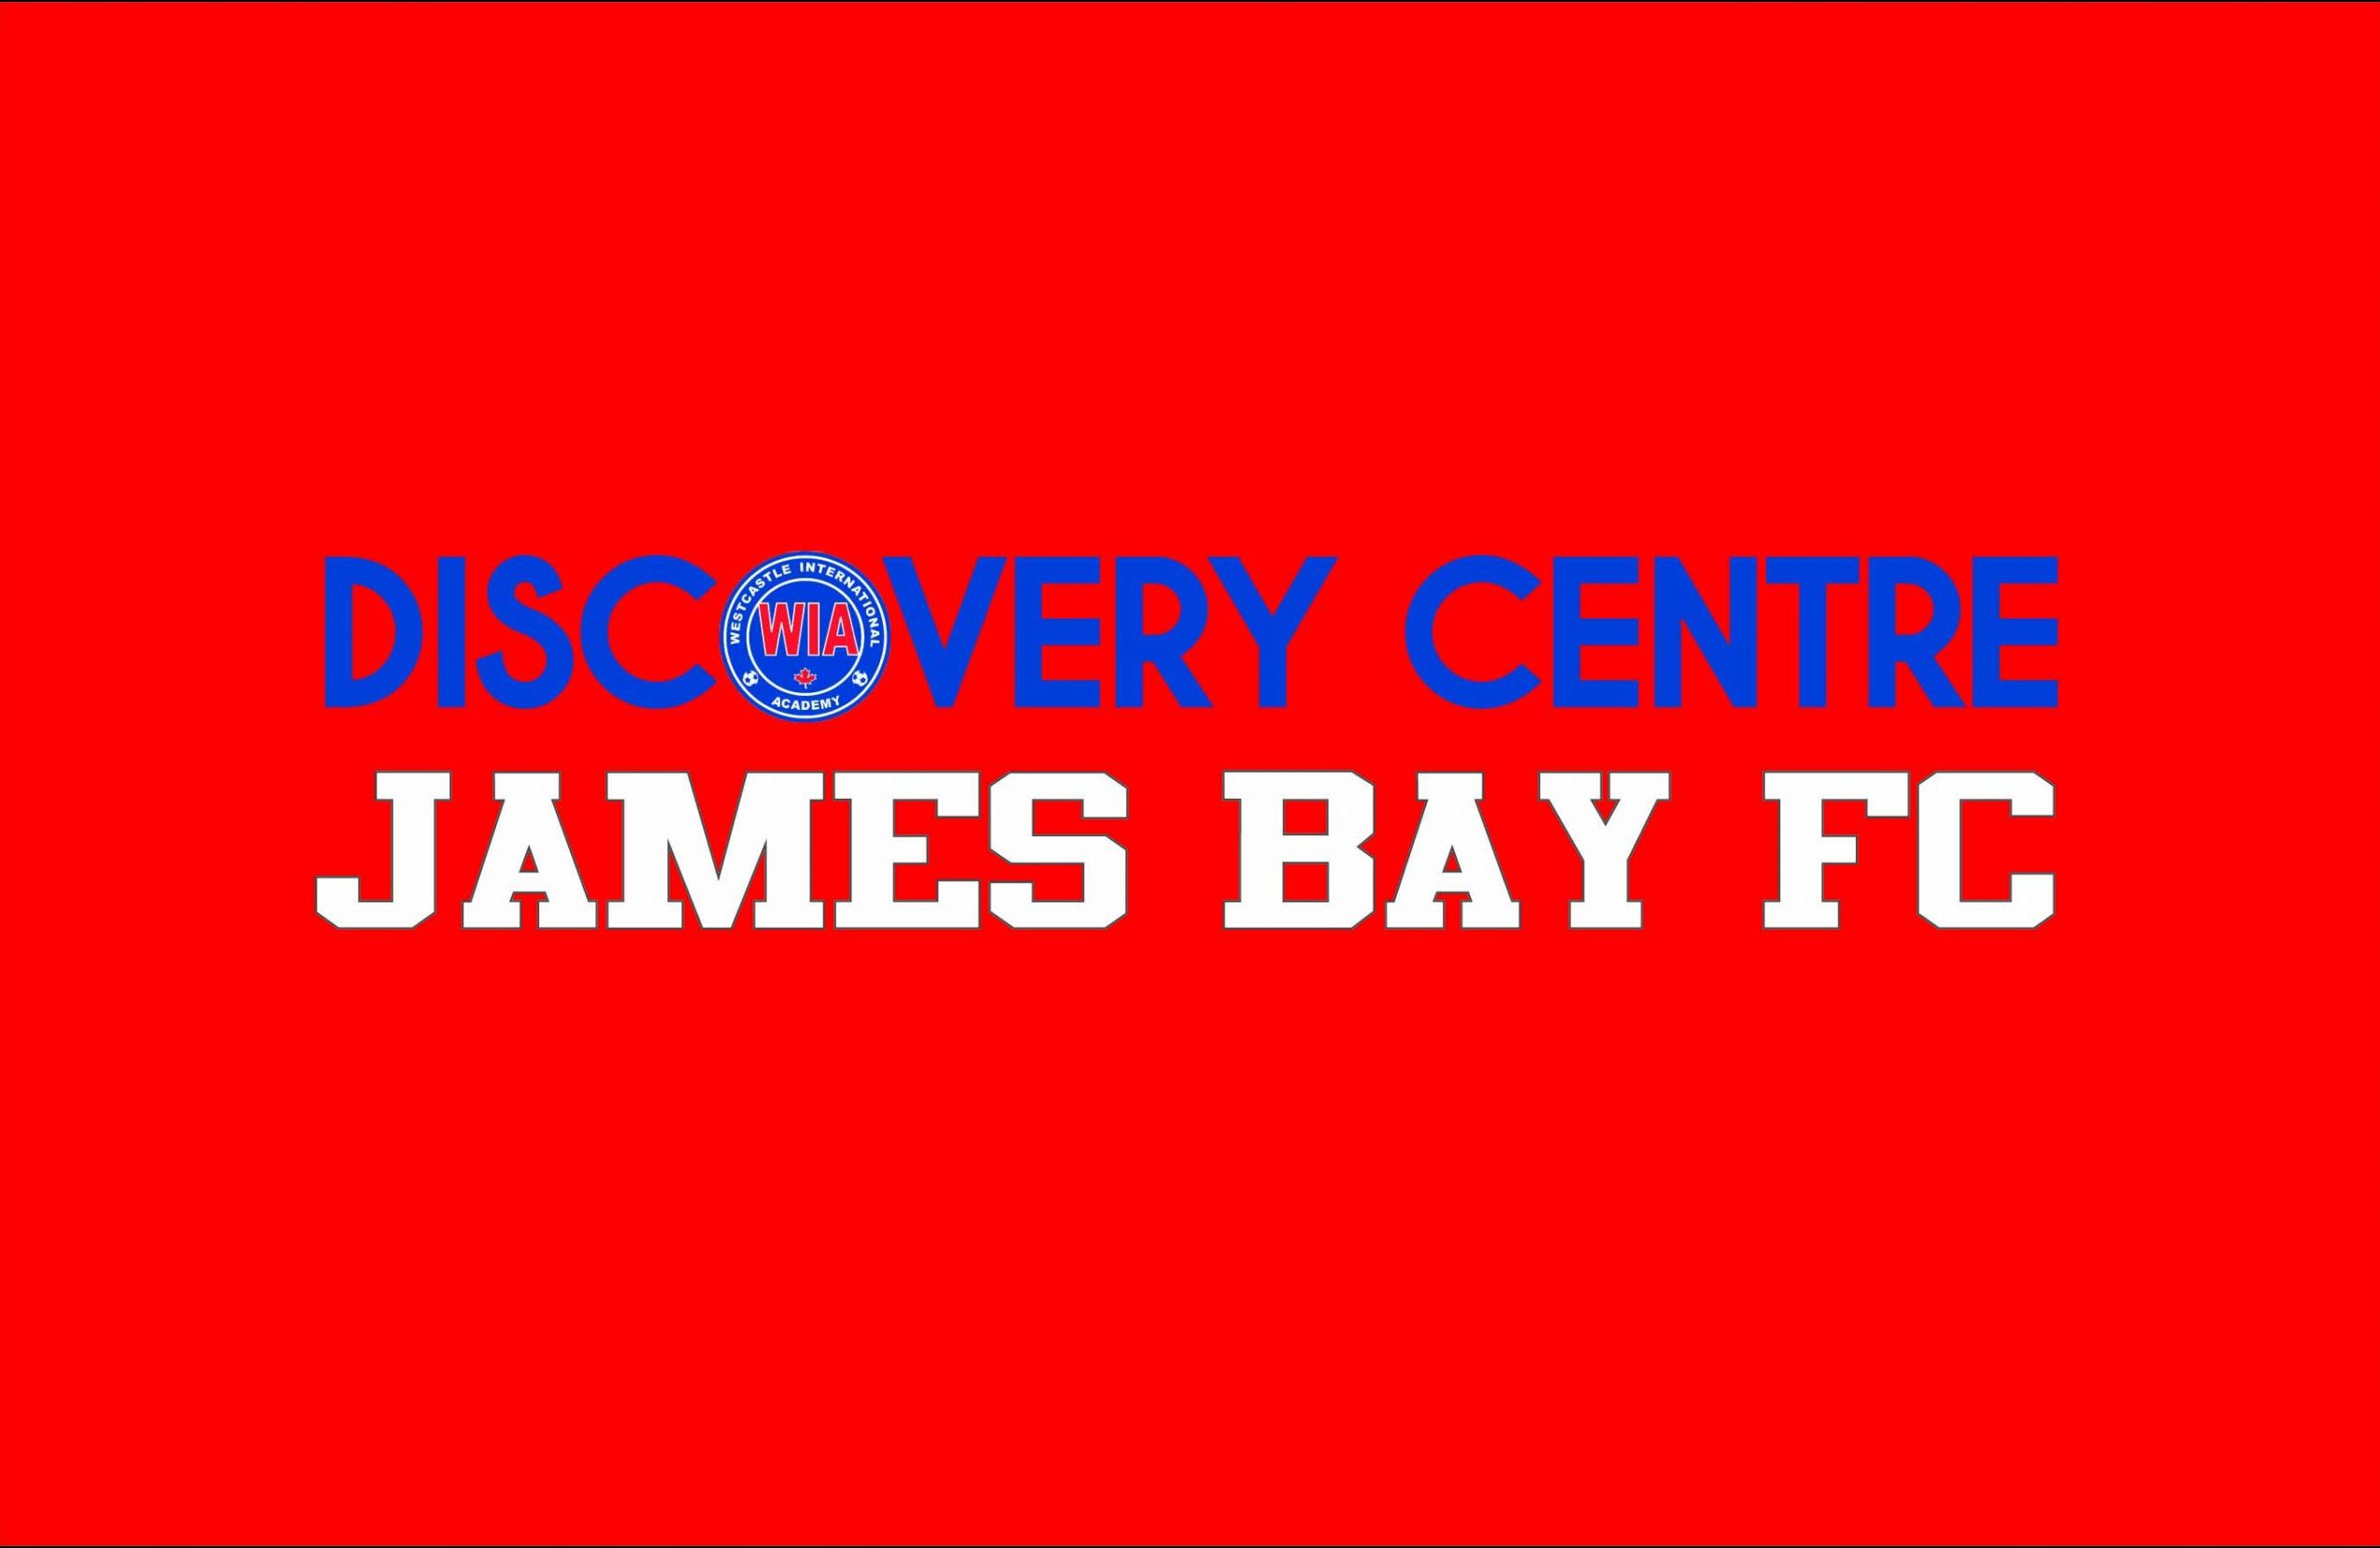 Discover Centre James Bay FC